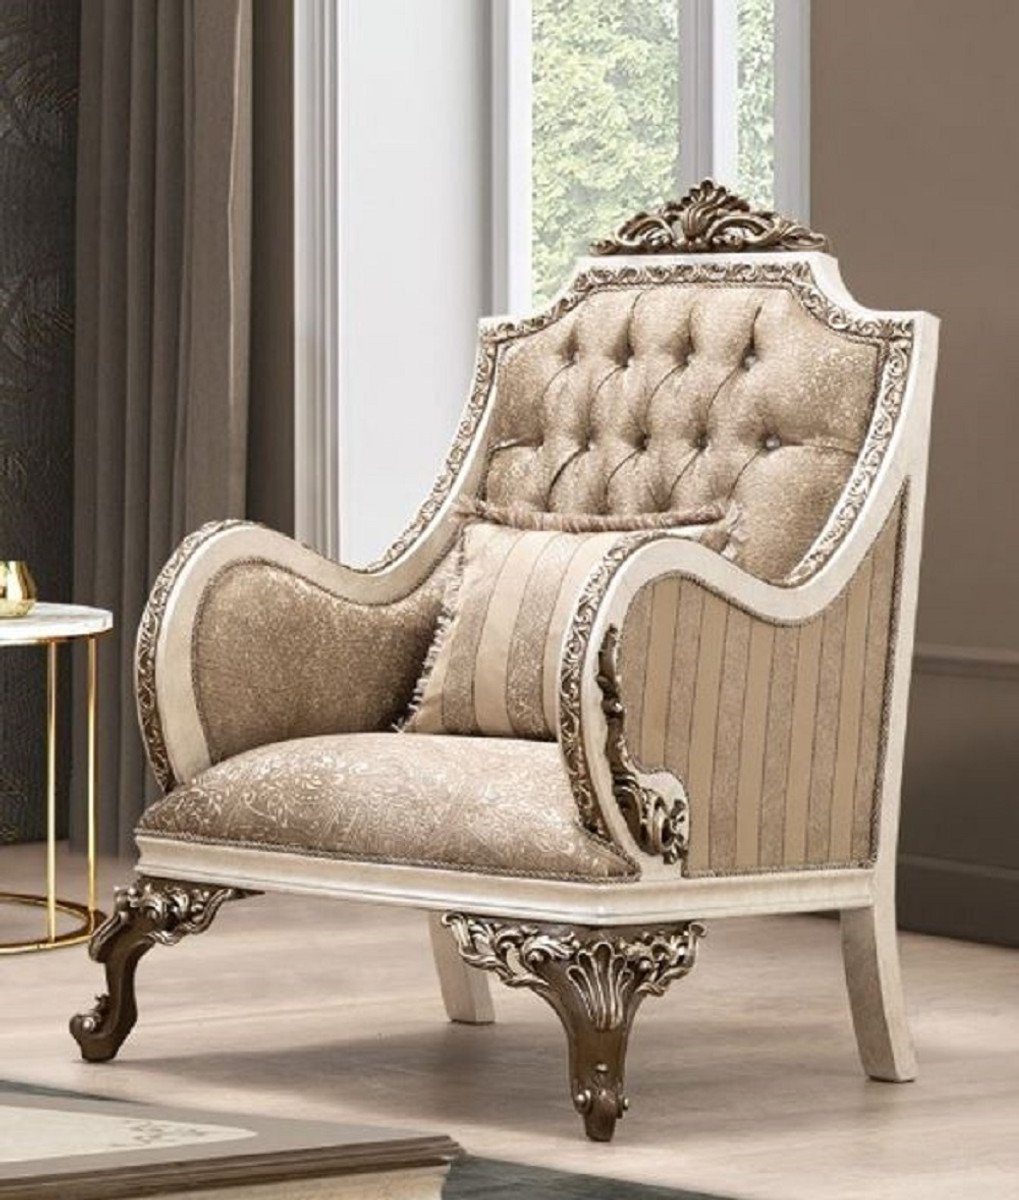 Casa Padrino Sessel Luxus Barock Sessel Beige / Cremefarben / Braun / Gold - Prunkvoller Wohnzimmer Sessel mit elegantem Muster - Barock Wohnzimmer Möbel